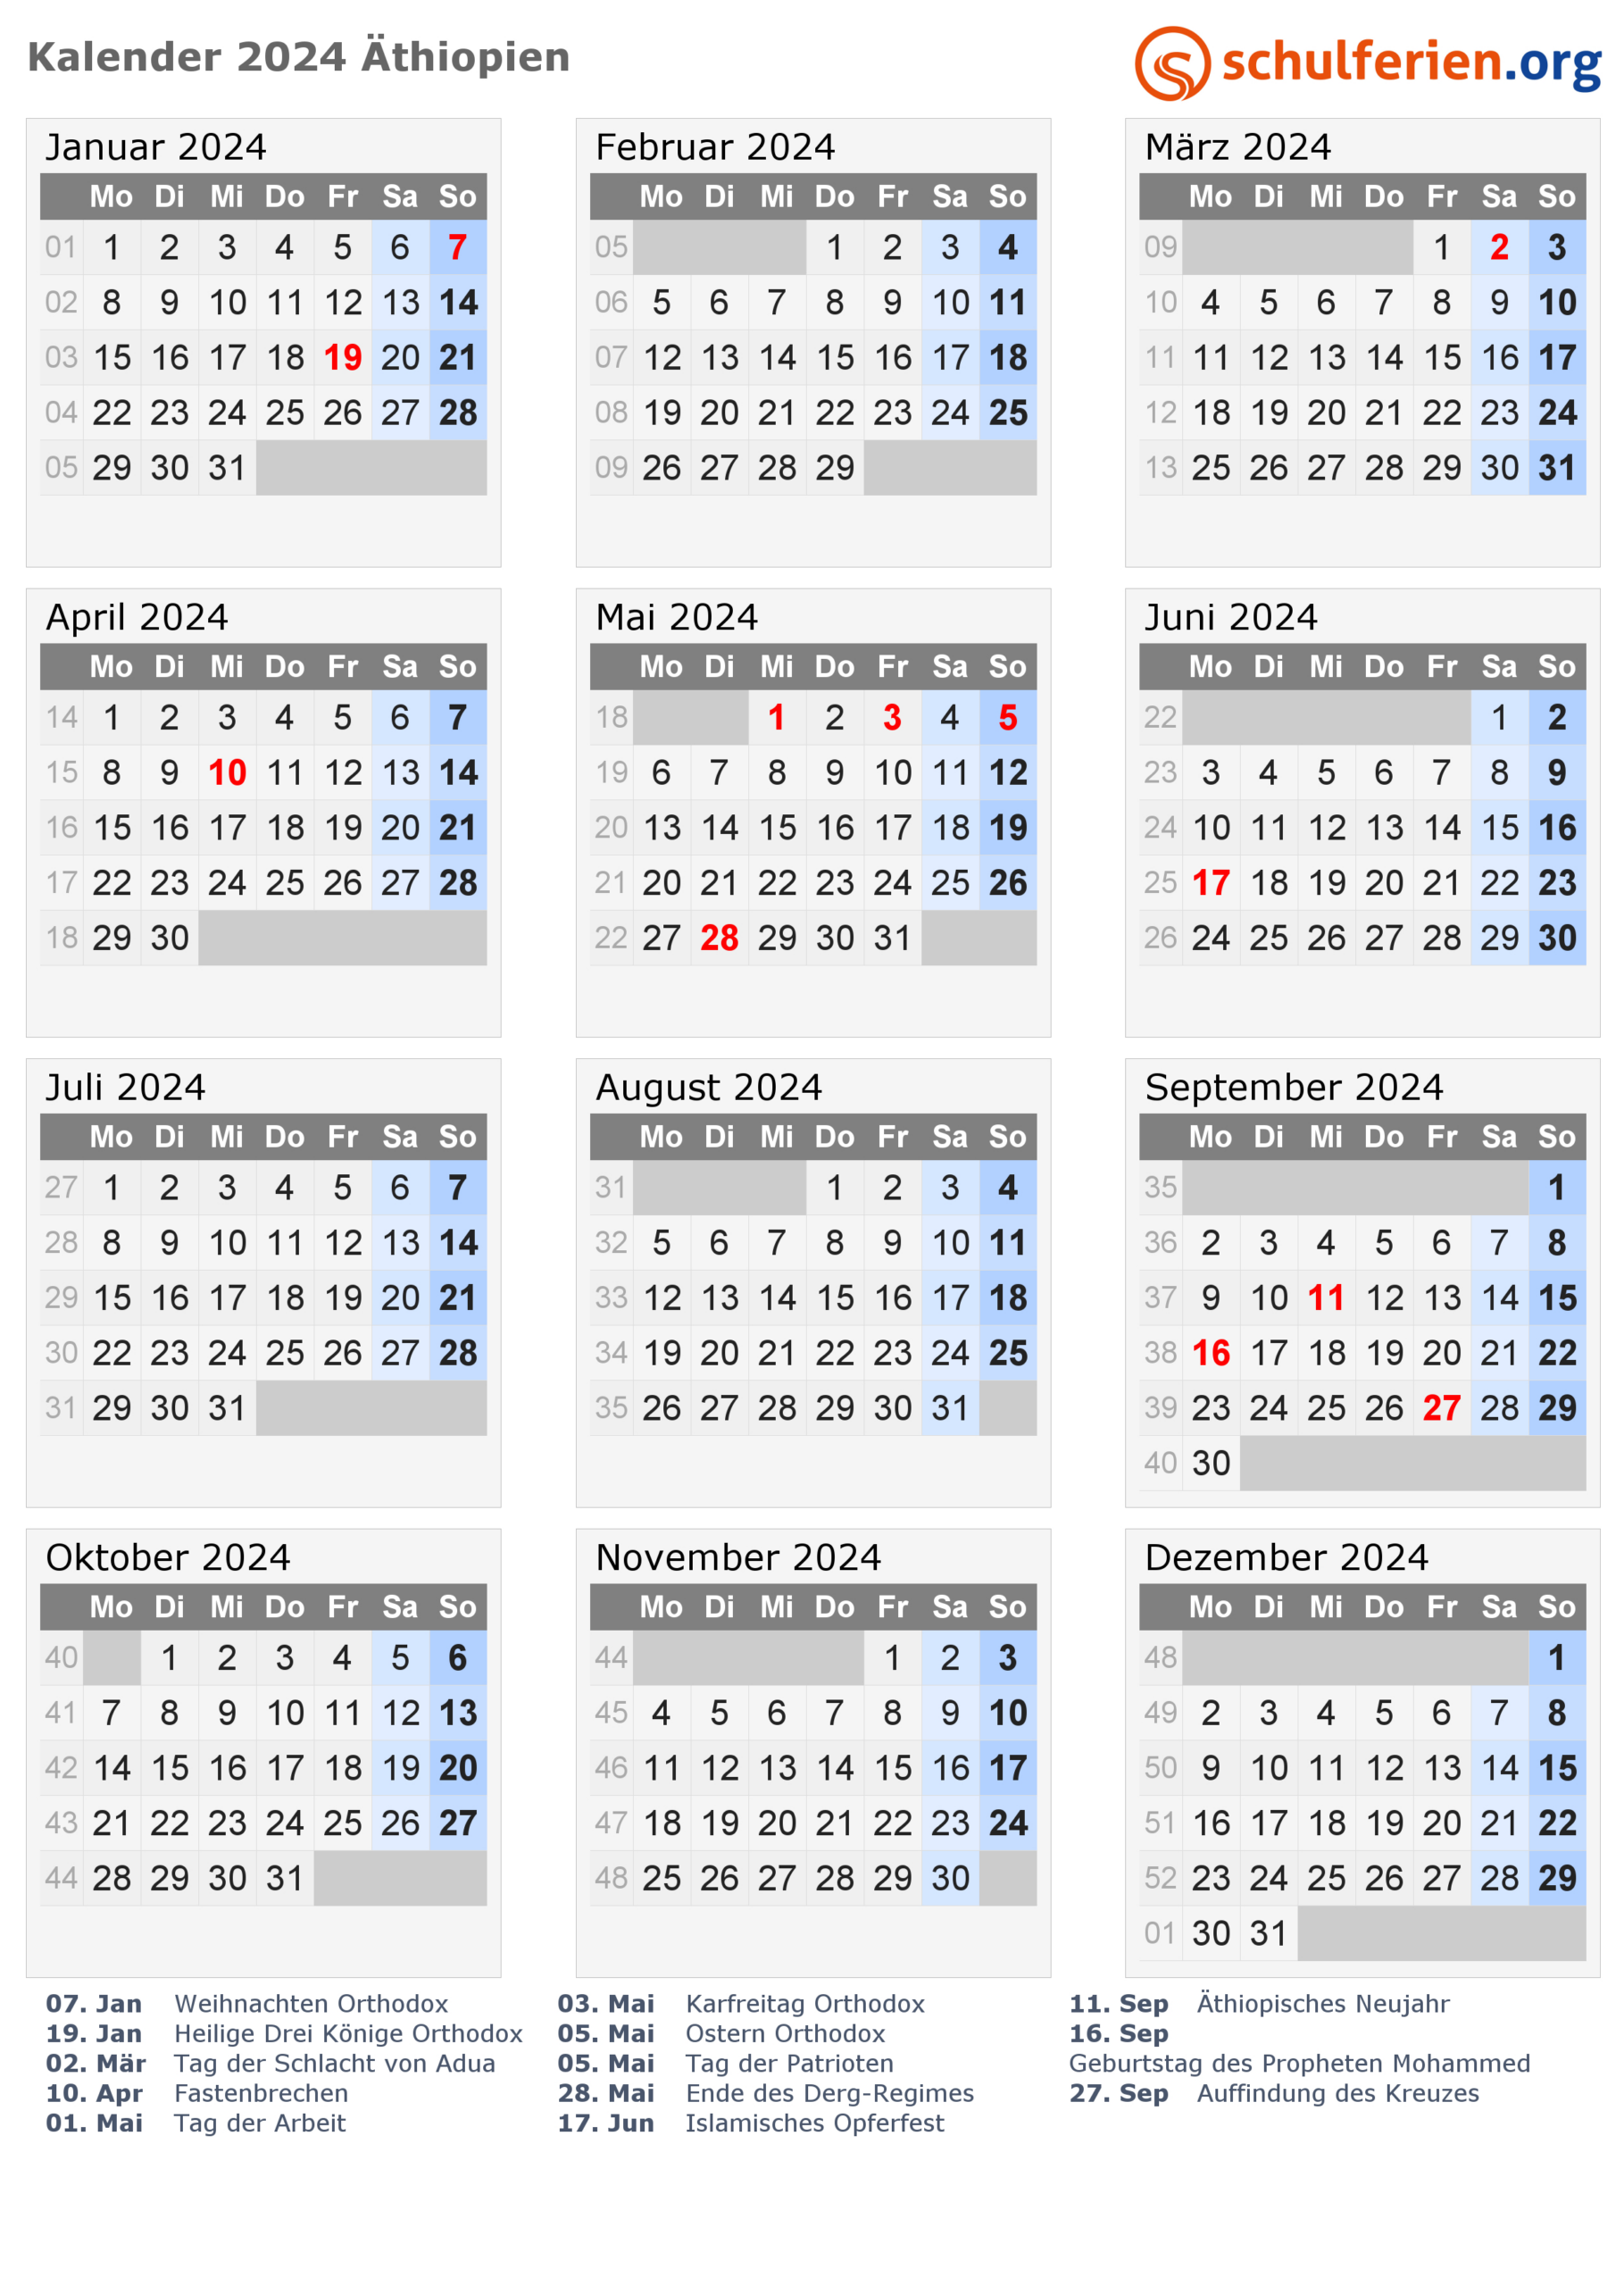 Kalender 2024/2025 Äthiopien, Feiertage | July 30 2024 In Ethiopian Calendar